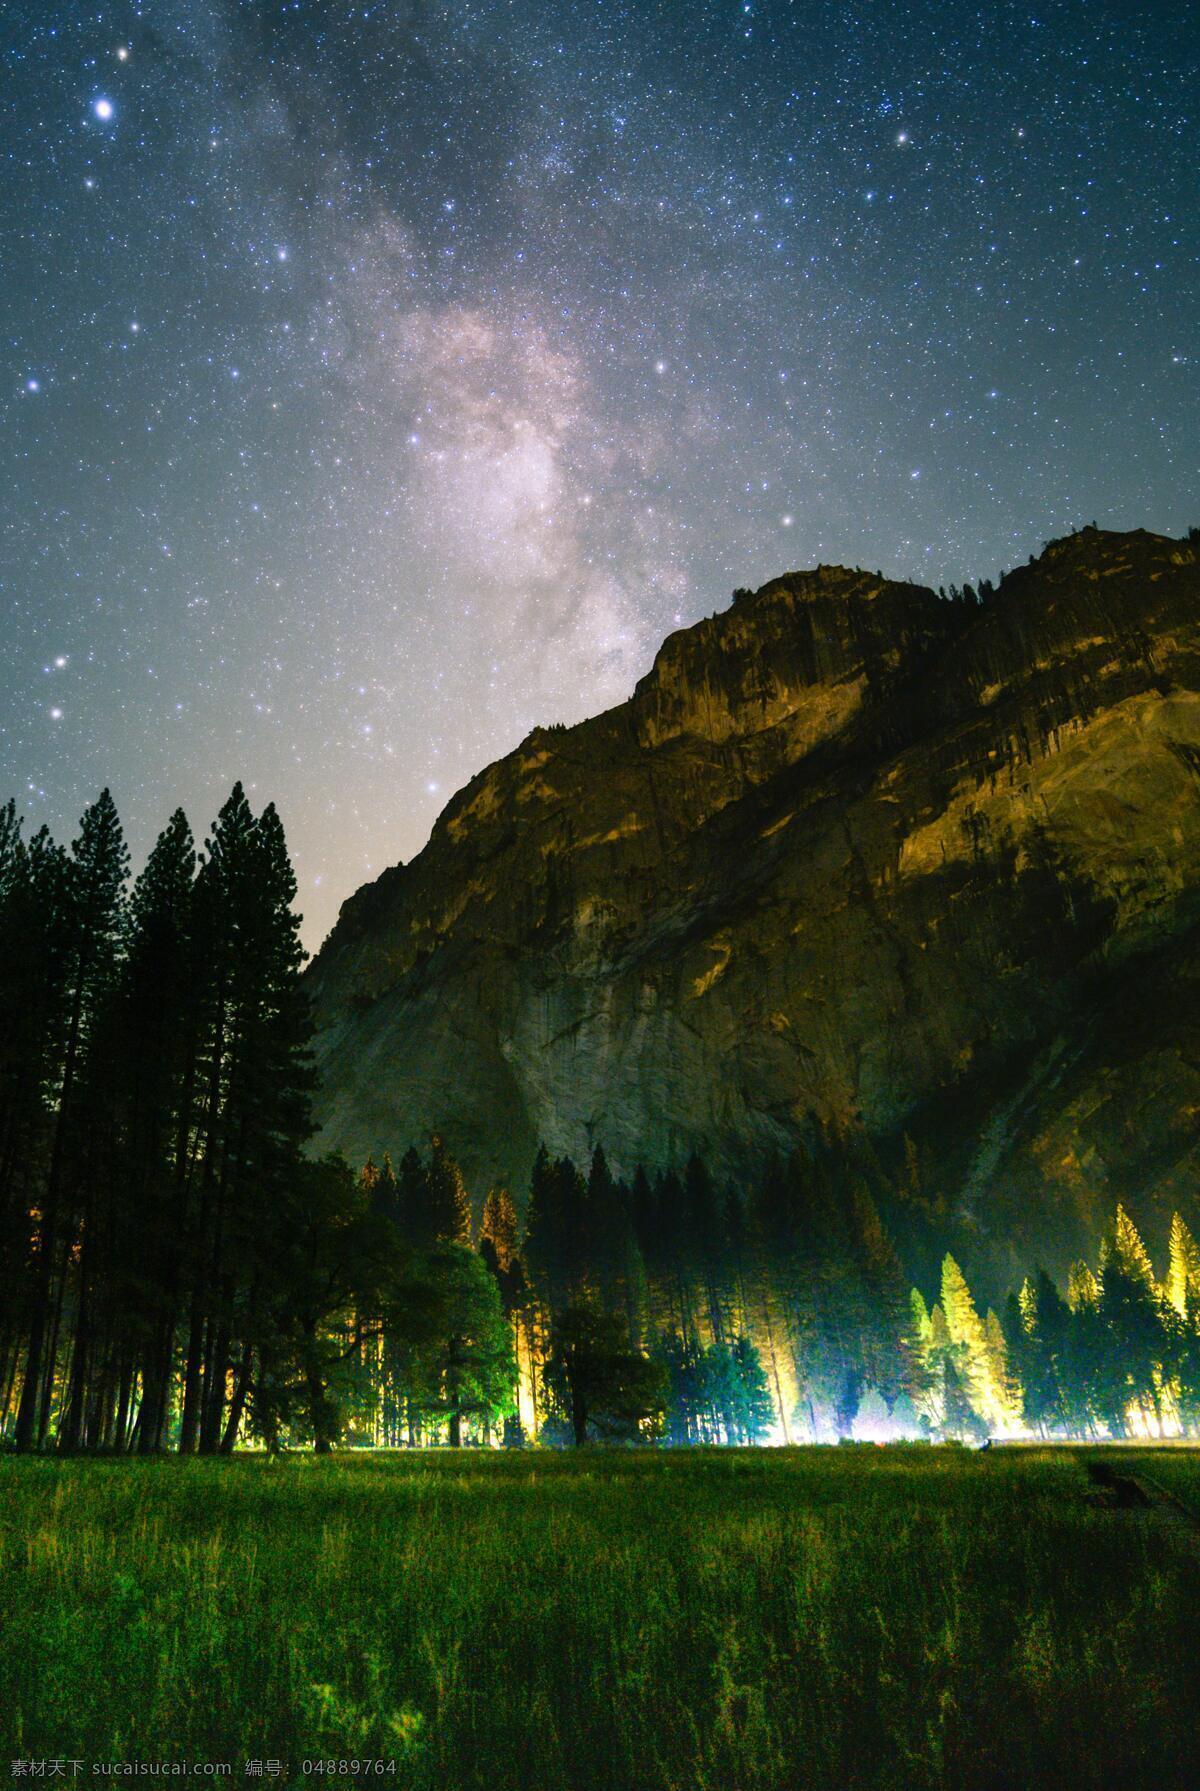 宇宙下的大山 山 银河 星星 夜星 夜空 丛林 壁纸 高清 超清 自然景观 山水风景